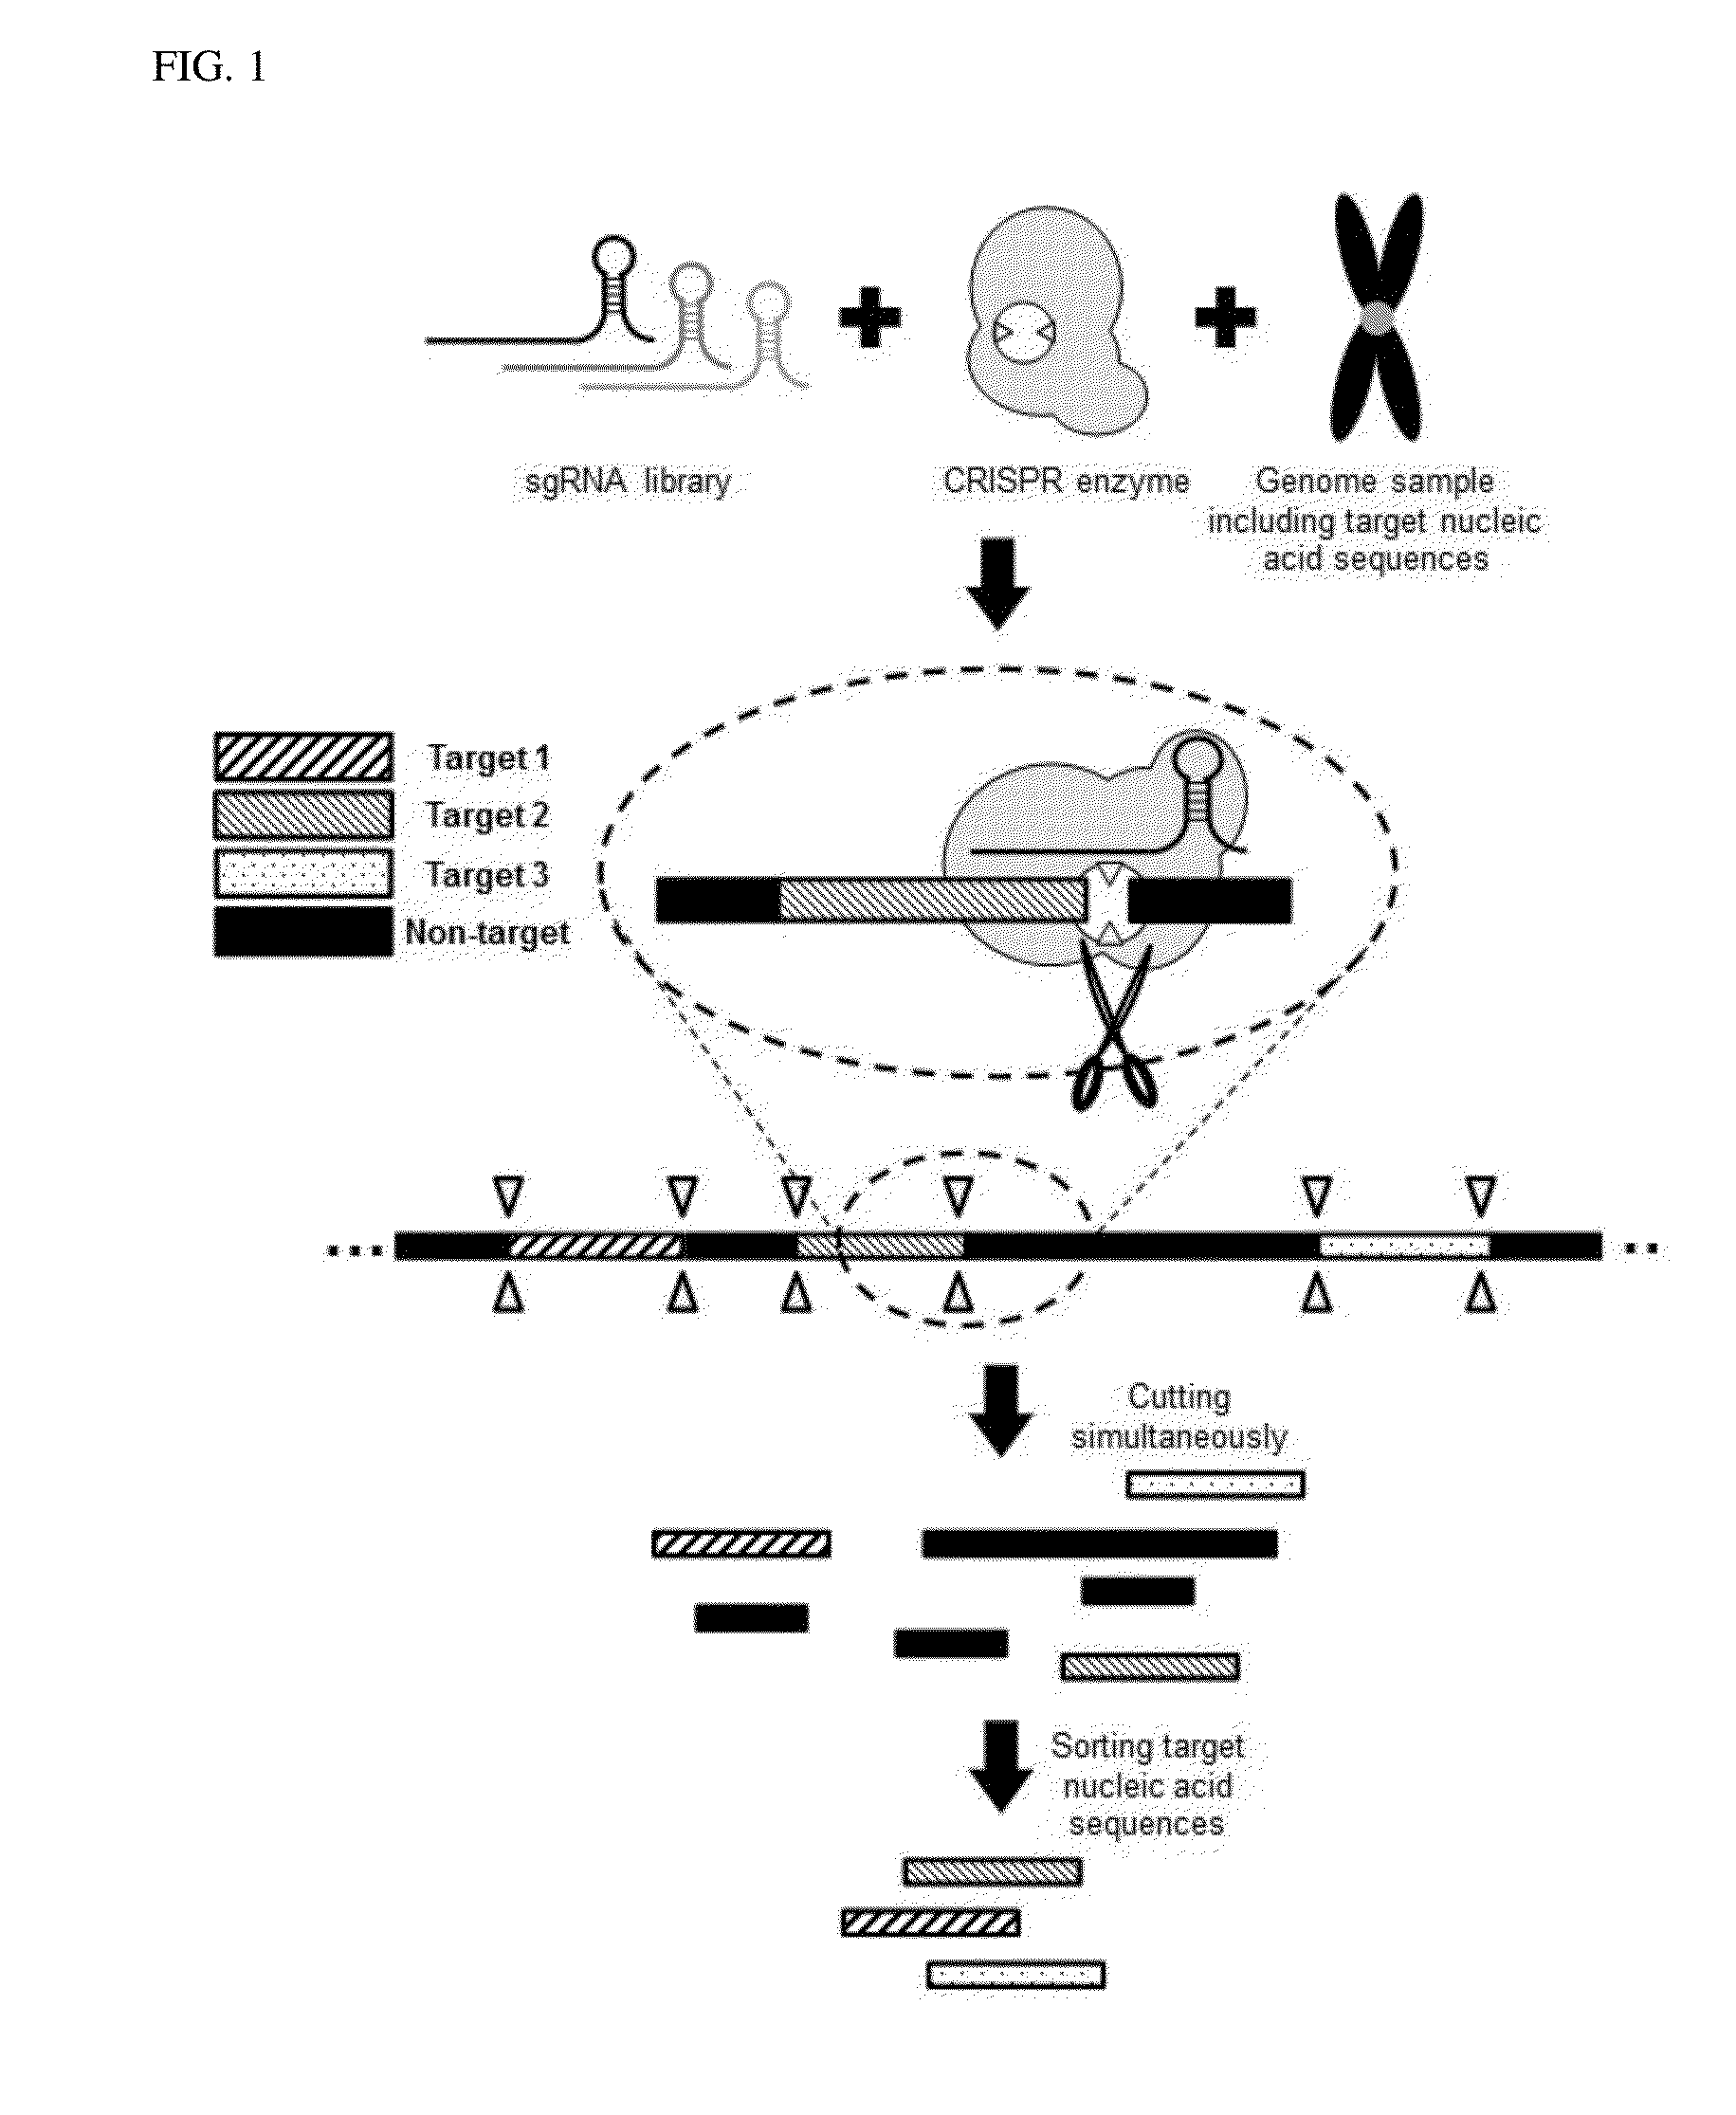 Method for target DNA enrichment using crispr system